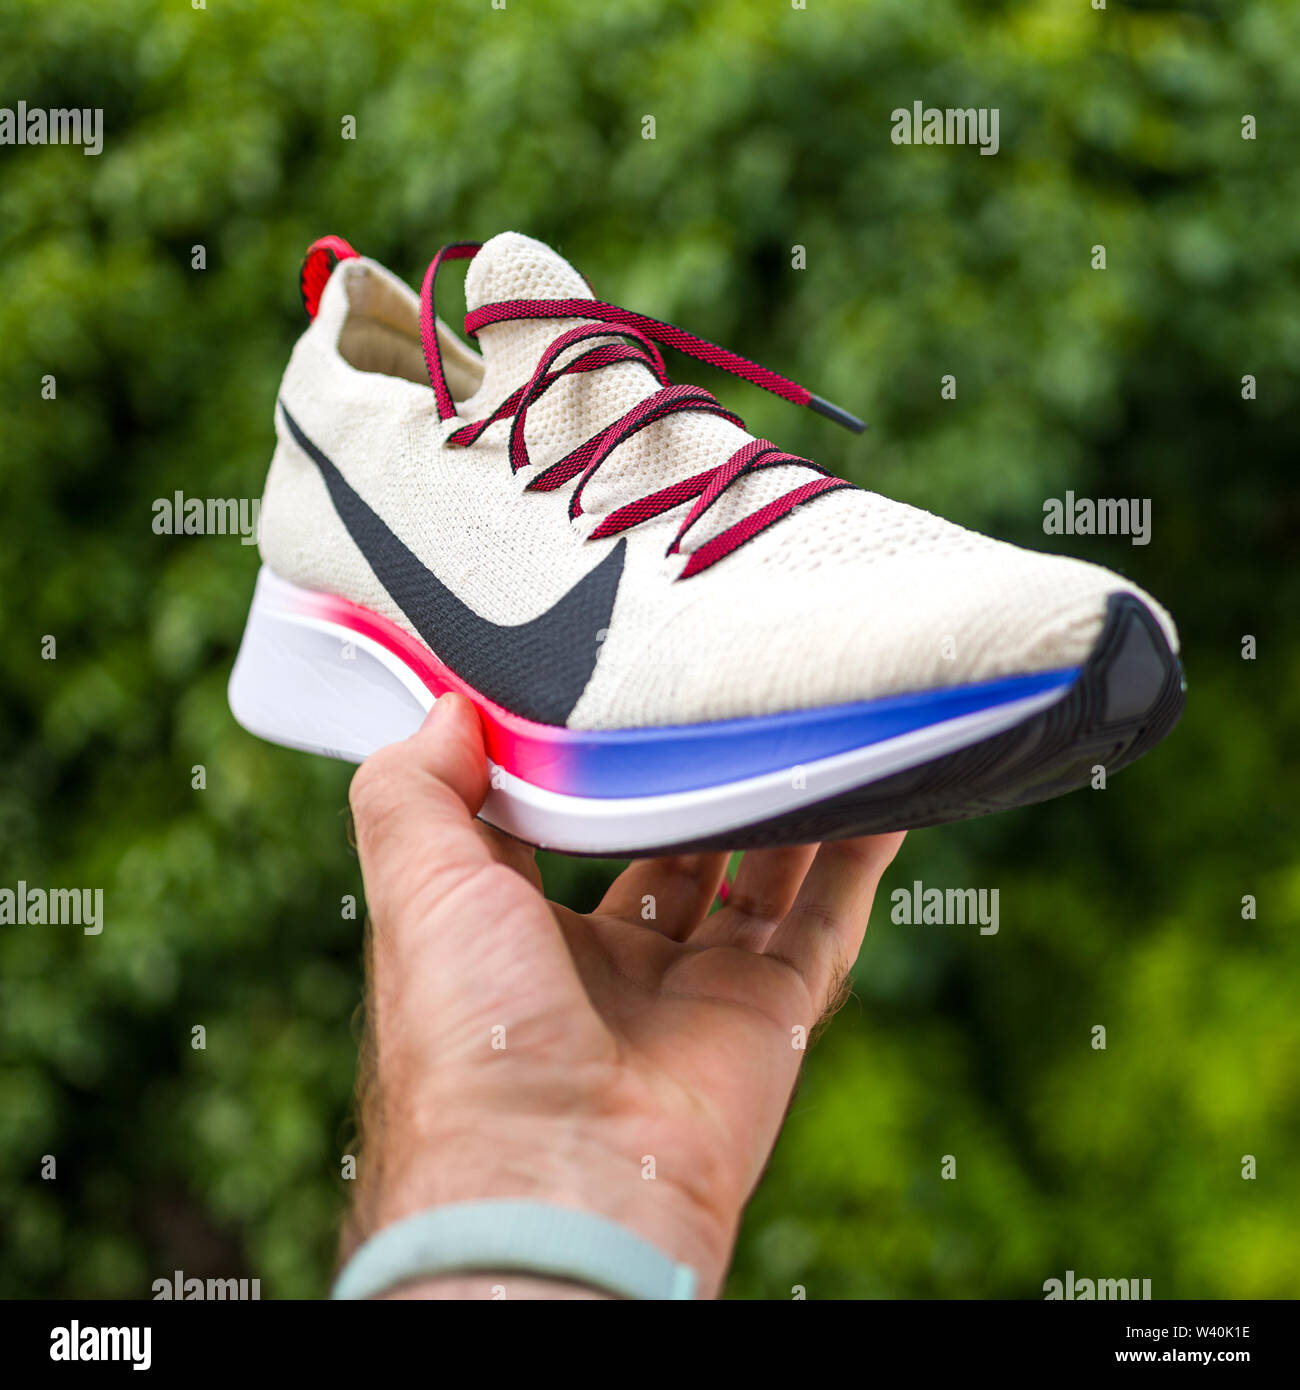 Impresionismo Ewell Ligero París, Francia - Jul 8, 2019: el atleta hombre mano sujetando presentando  nuevas zapatillas Nike Zoom Fly Flyknit contra fondo verde - Vista frontal  de la nueva zapatilla Fotografía de stock - Alamy